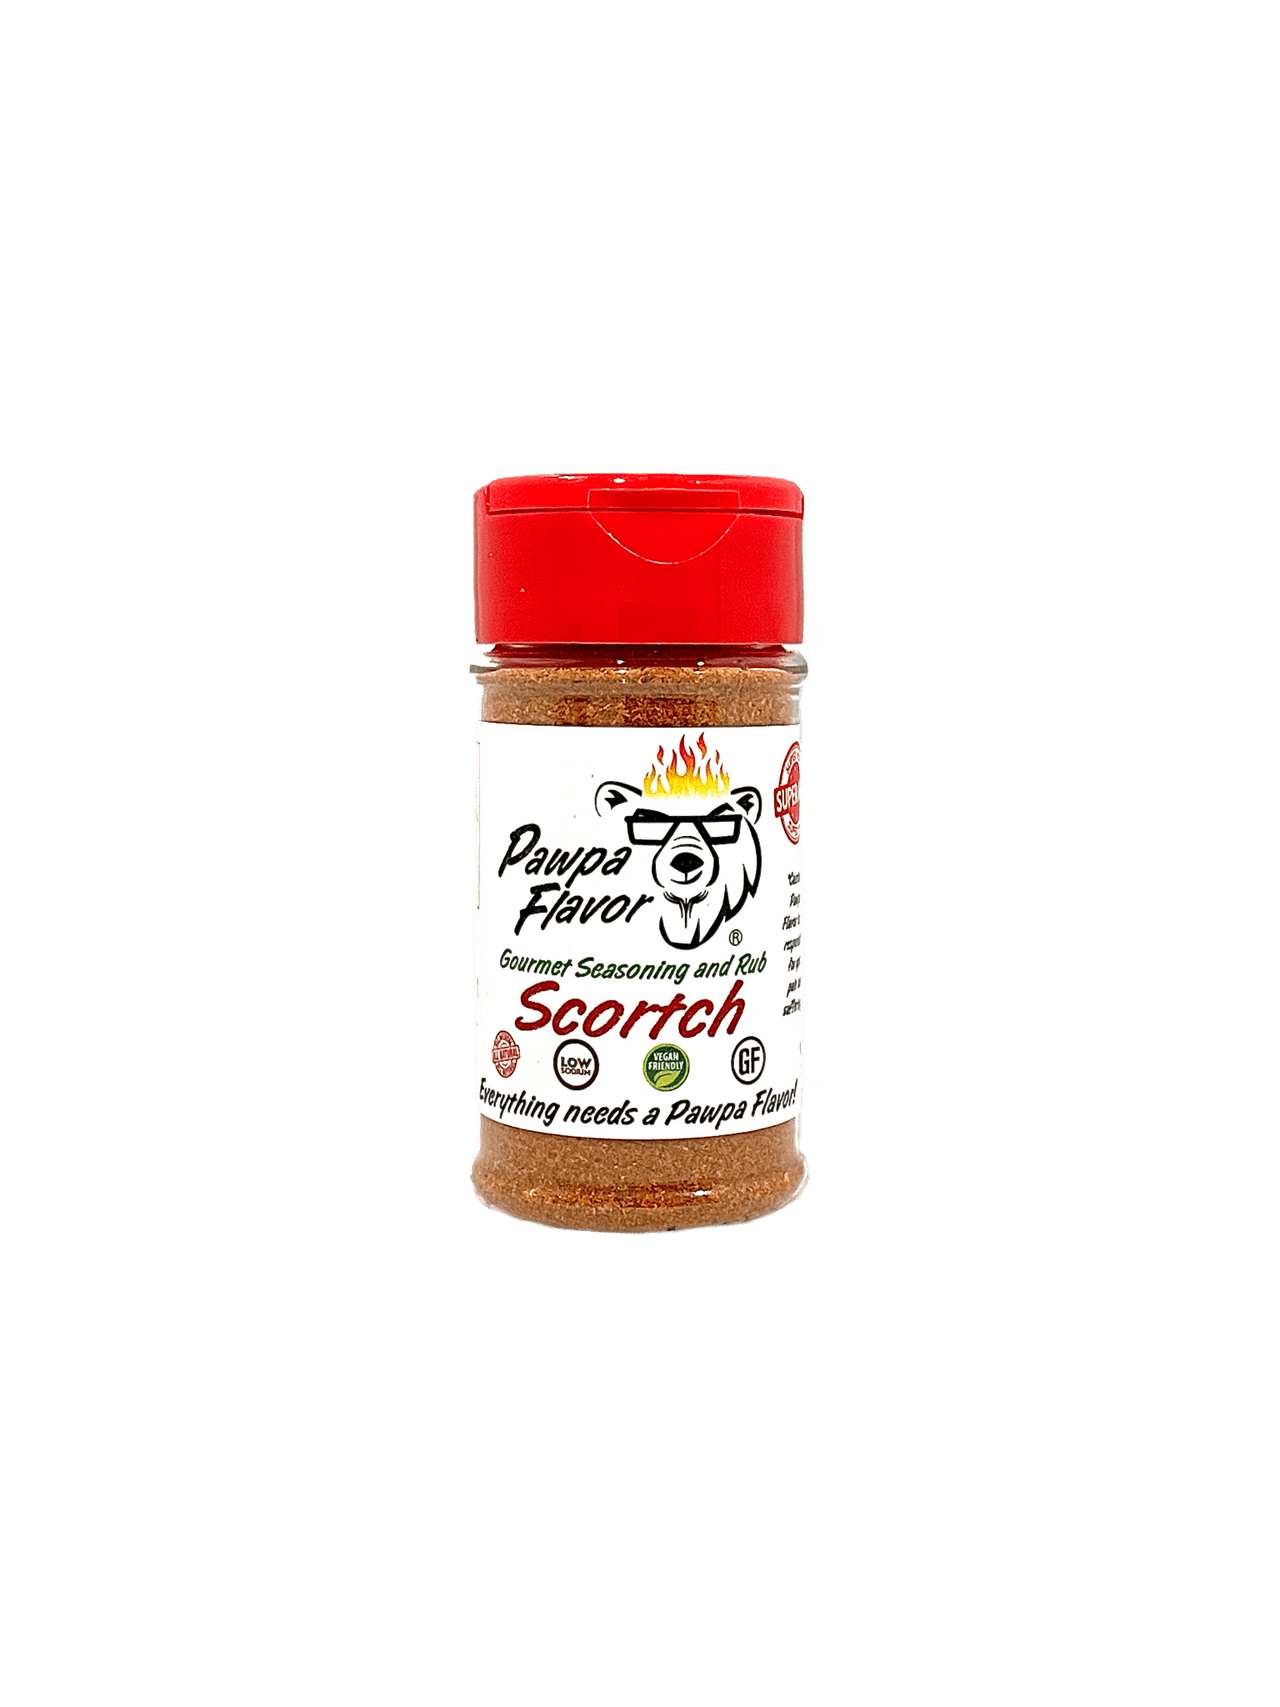 Pawpa Flavor Seasonings and Rubs Scortch 2.50oz